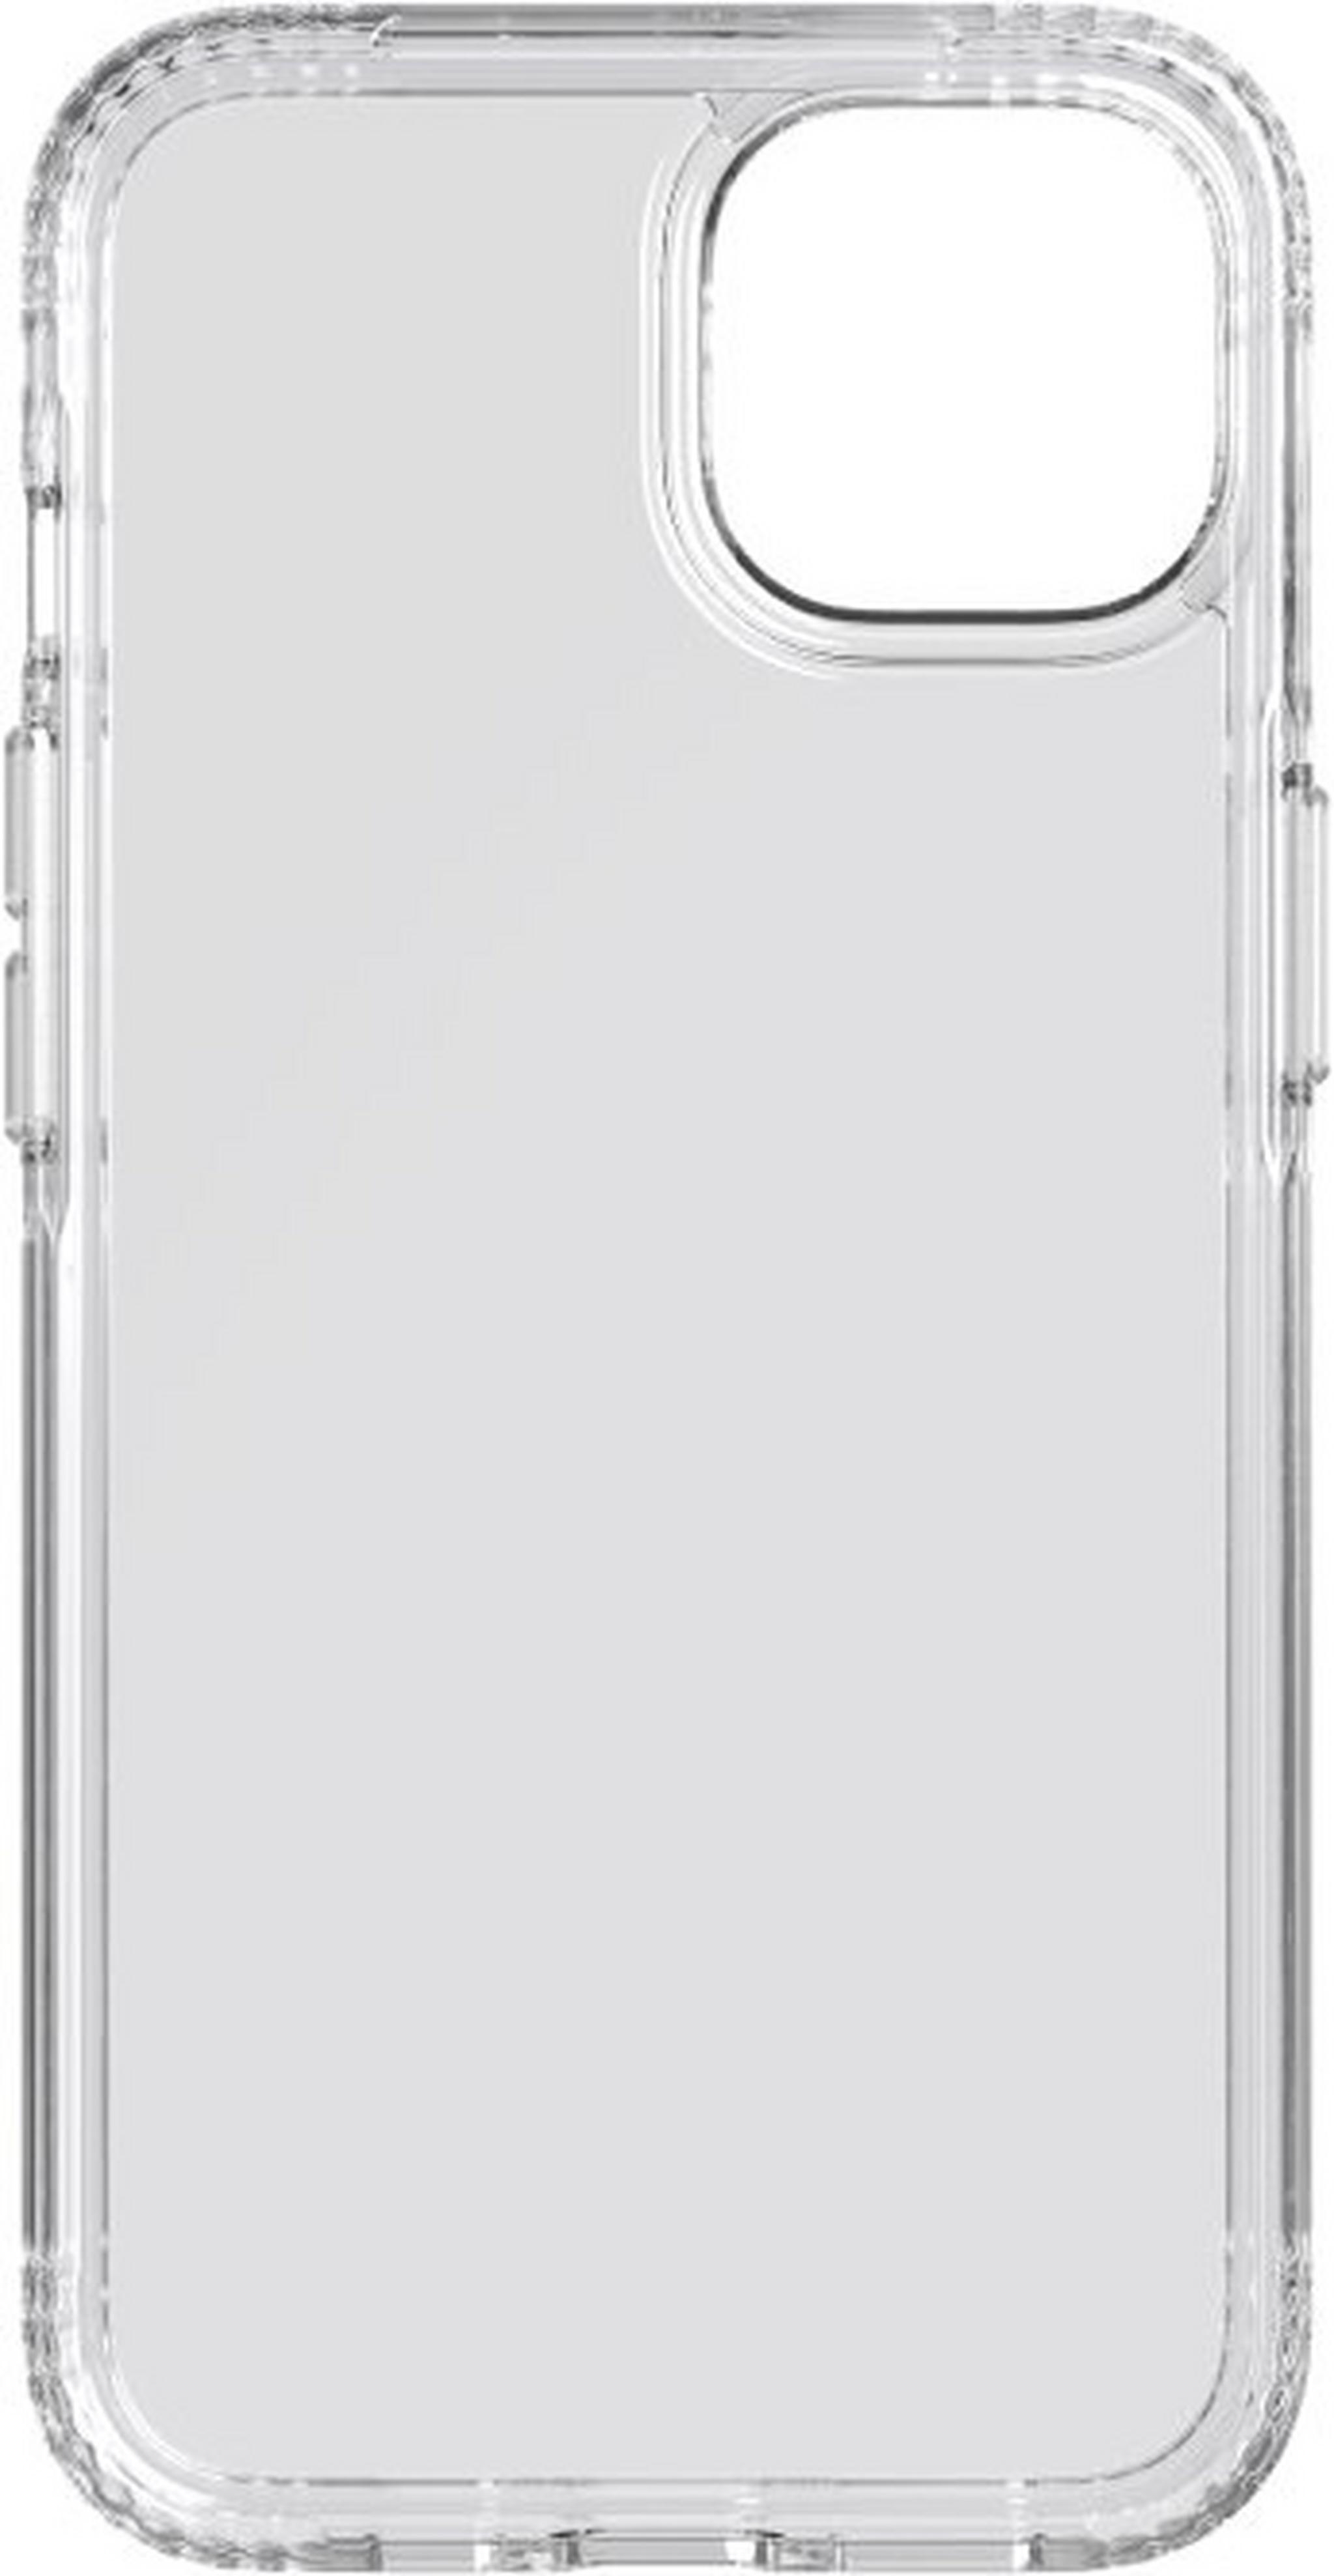 غطاء حماية ايفو كلير لابل ايفون 13 من تيك21 - شفاف